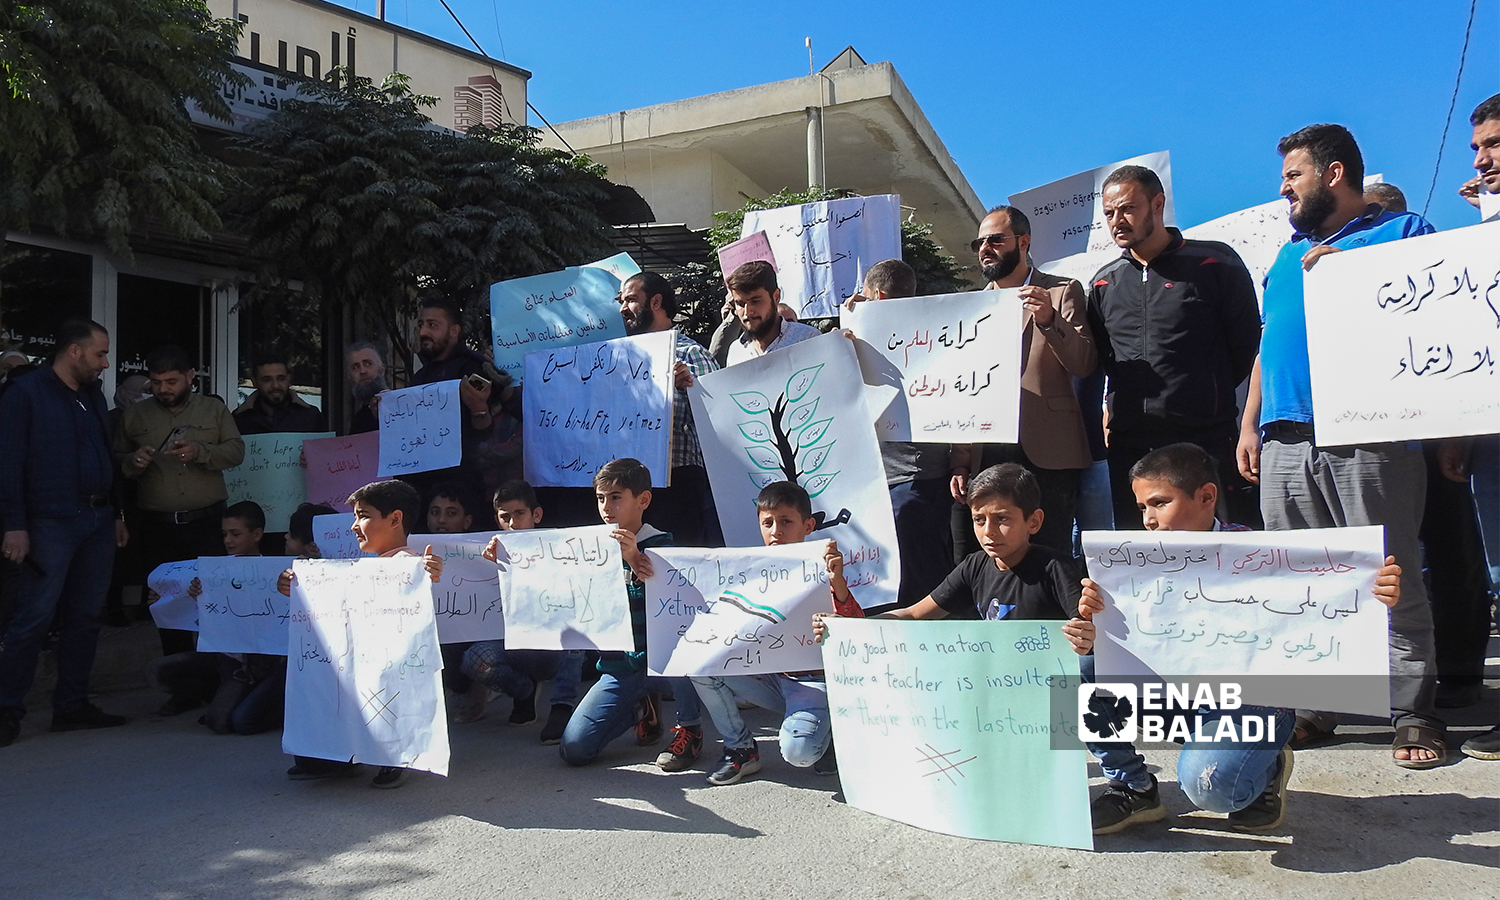 معلمون يحتجون على تدني اجورهم ويطالبون بتحسين الواقع التعليمي  في مدينة اعزاز بريف حلب 21 تشرين الأول 2021 (عنب بلدي - وليد عثمان)